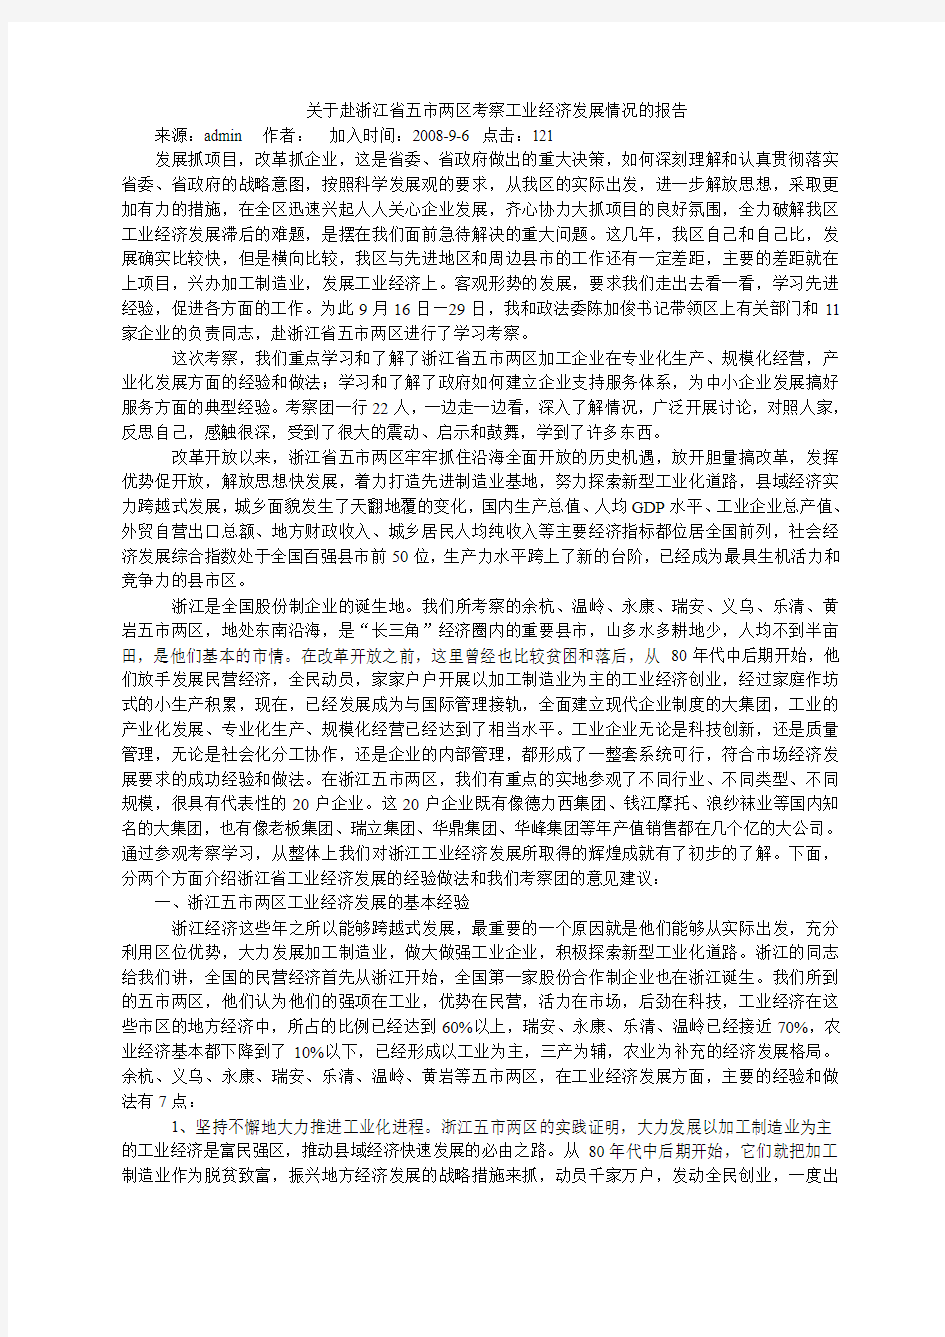 关于赴浙江省五市两区考察工业经济发展情况的报告